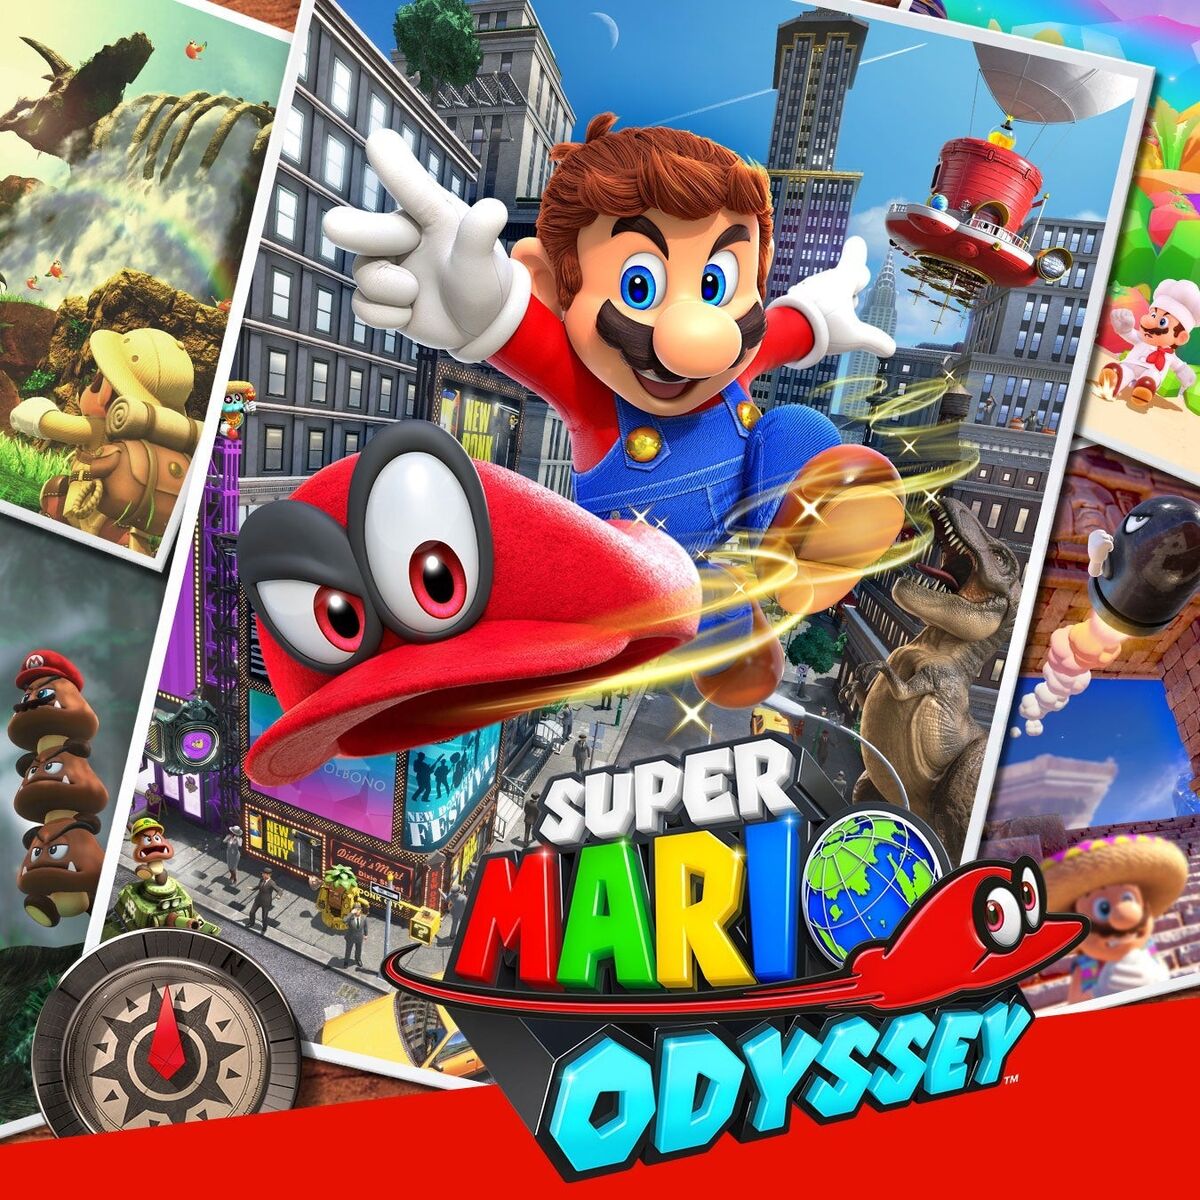 Super Mario Odyssey Fandom | Vesterandfriends Wiki 